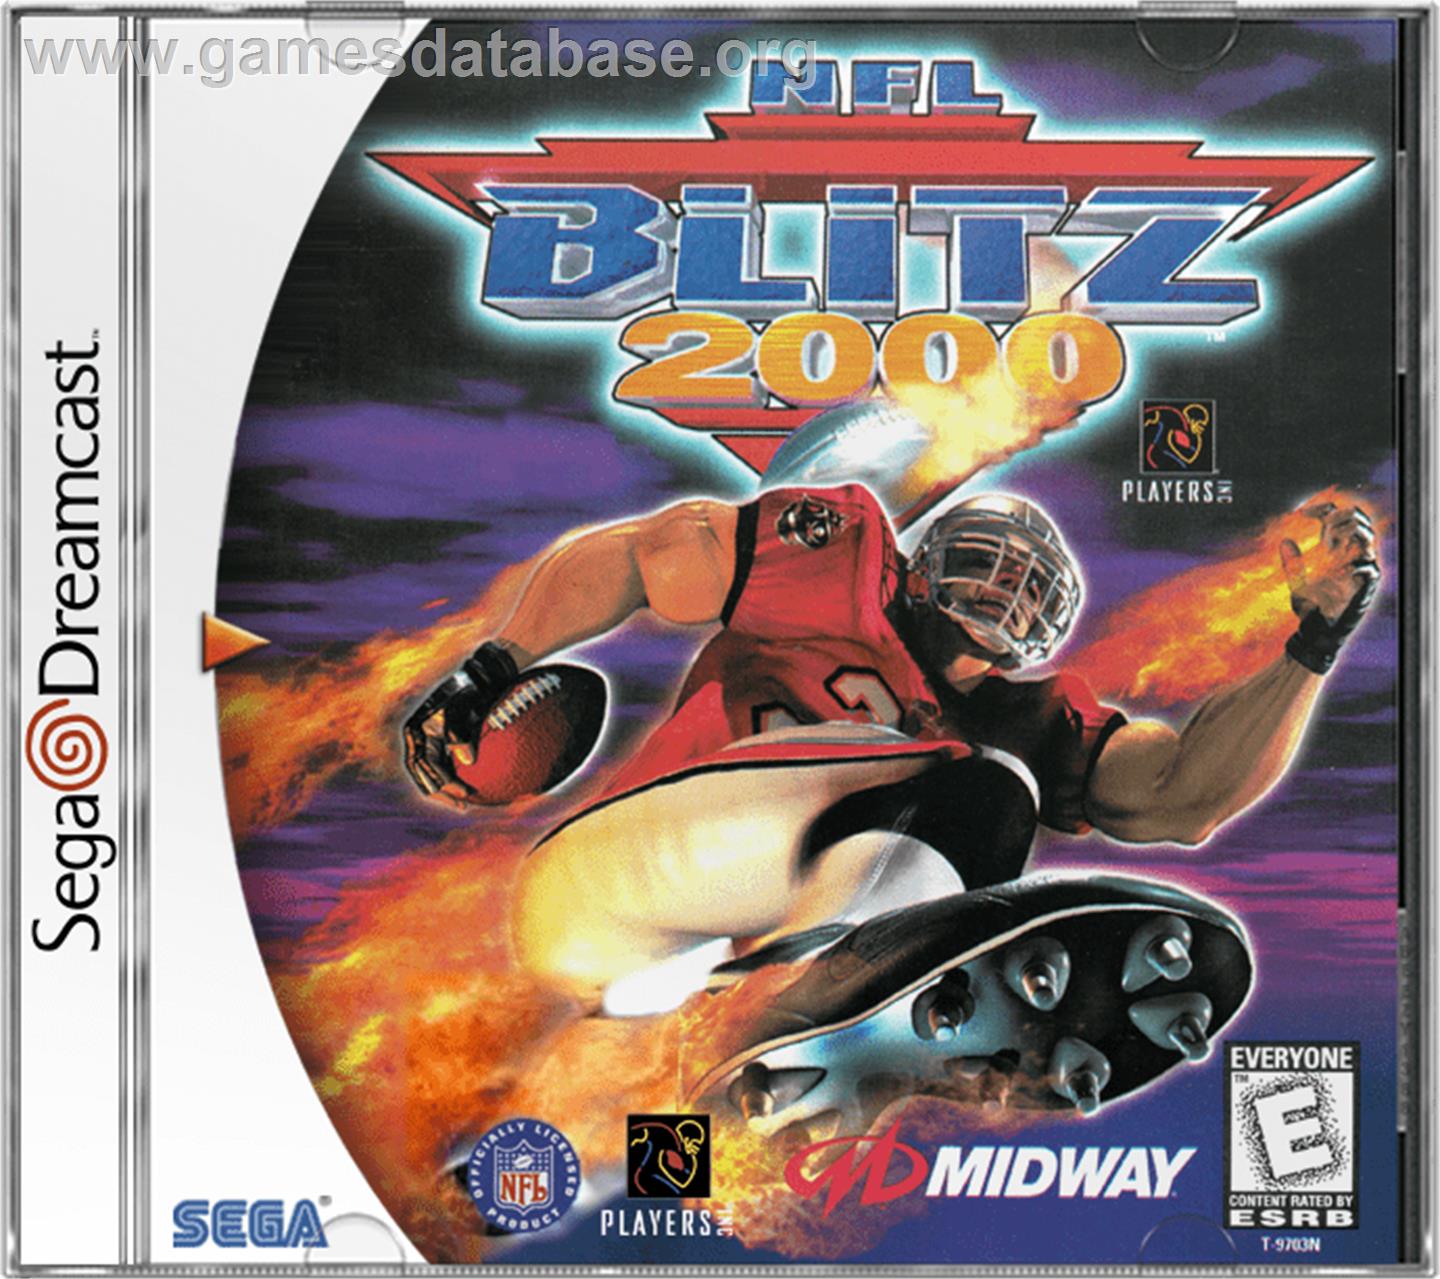 NFL Blitz 2000 - Sega Dreamcast - Artwork - Box